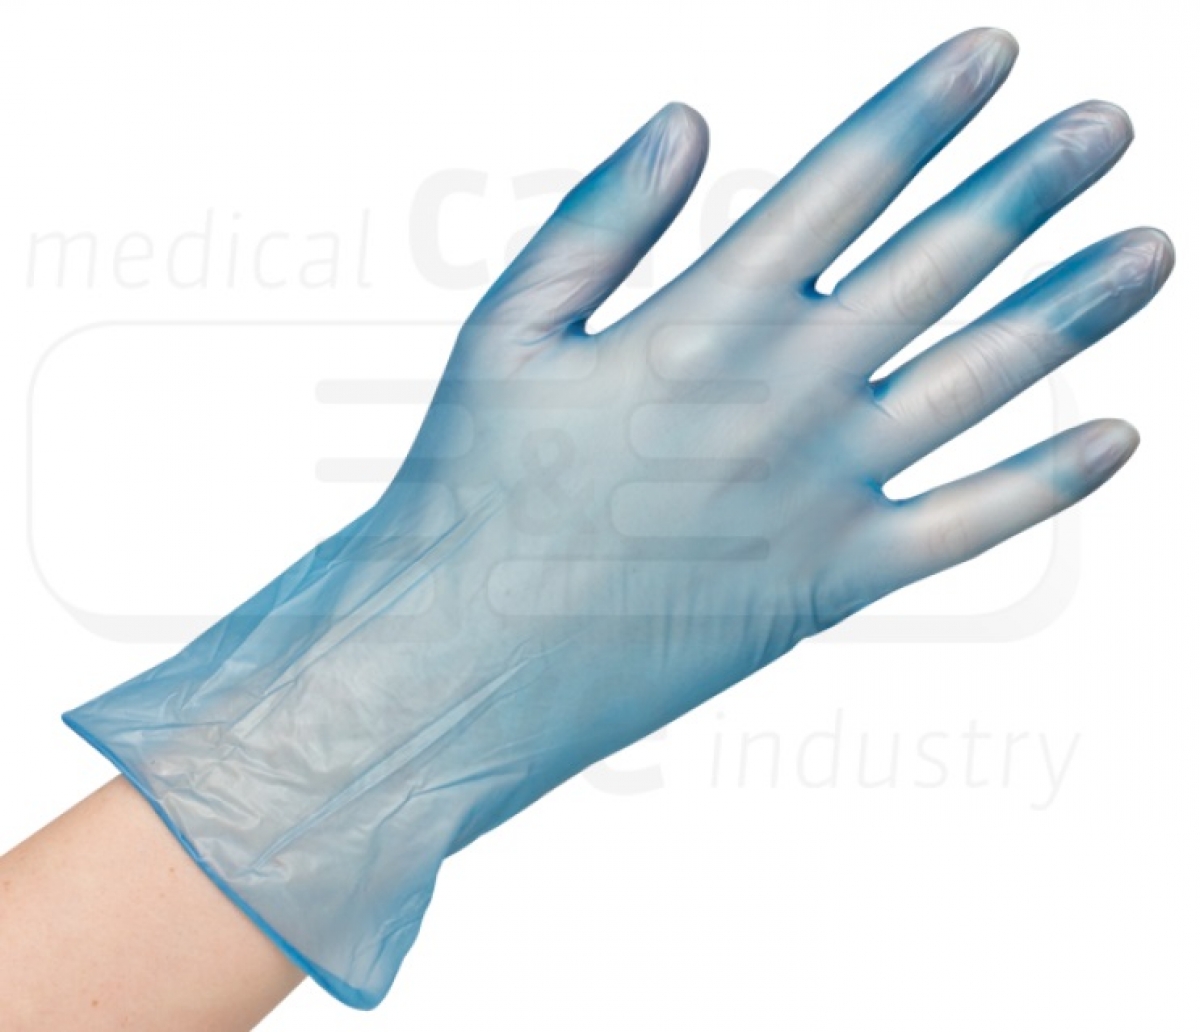 WIROS-Hand-Schutz, Einweg-Vinyl Handschuhe, puderfrei, efficient, Spenderbox, Pkg  100 Stck, VE = 10 Pkg, blau